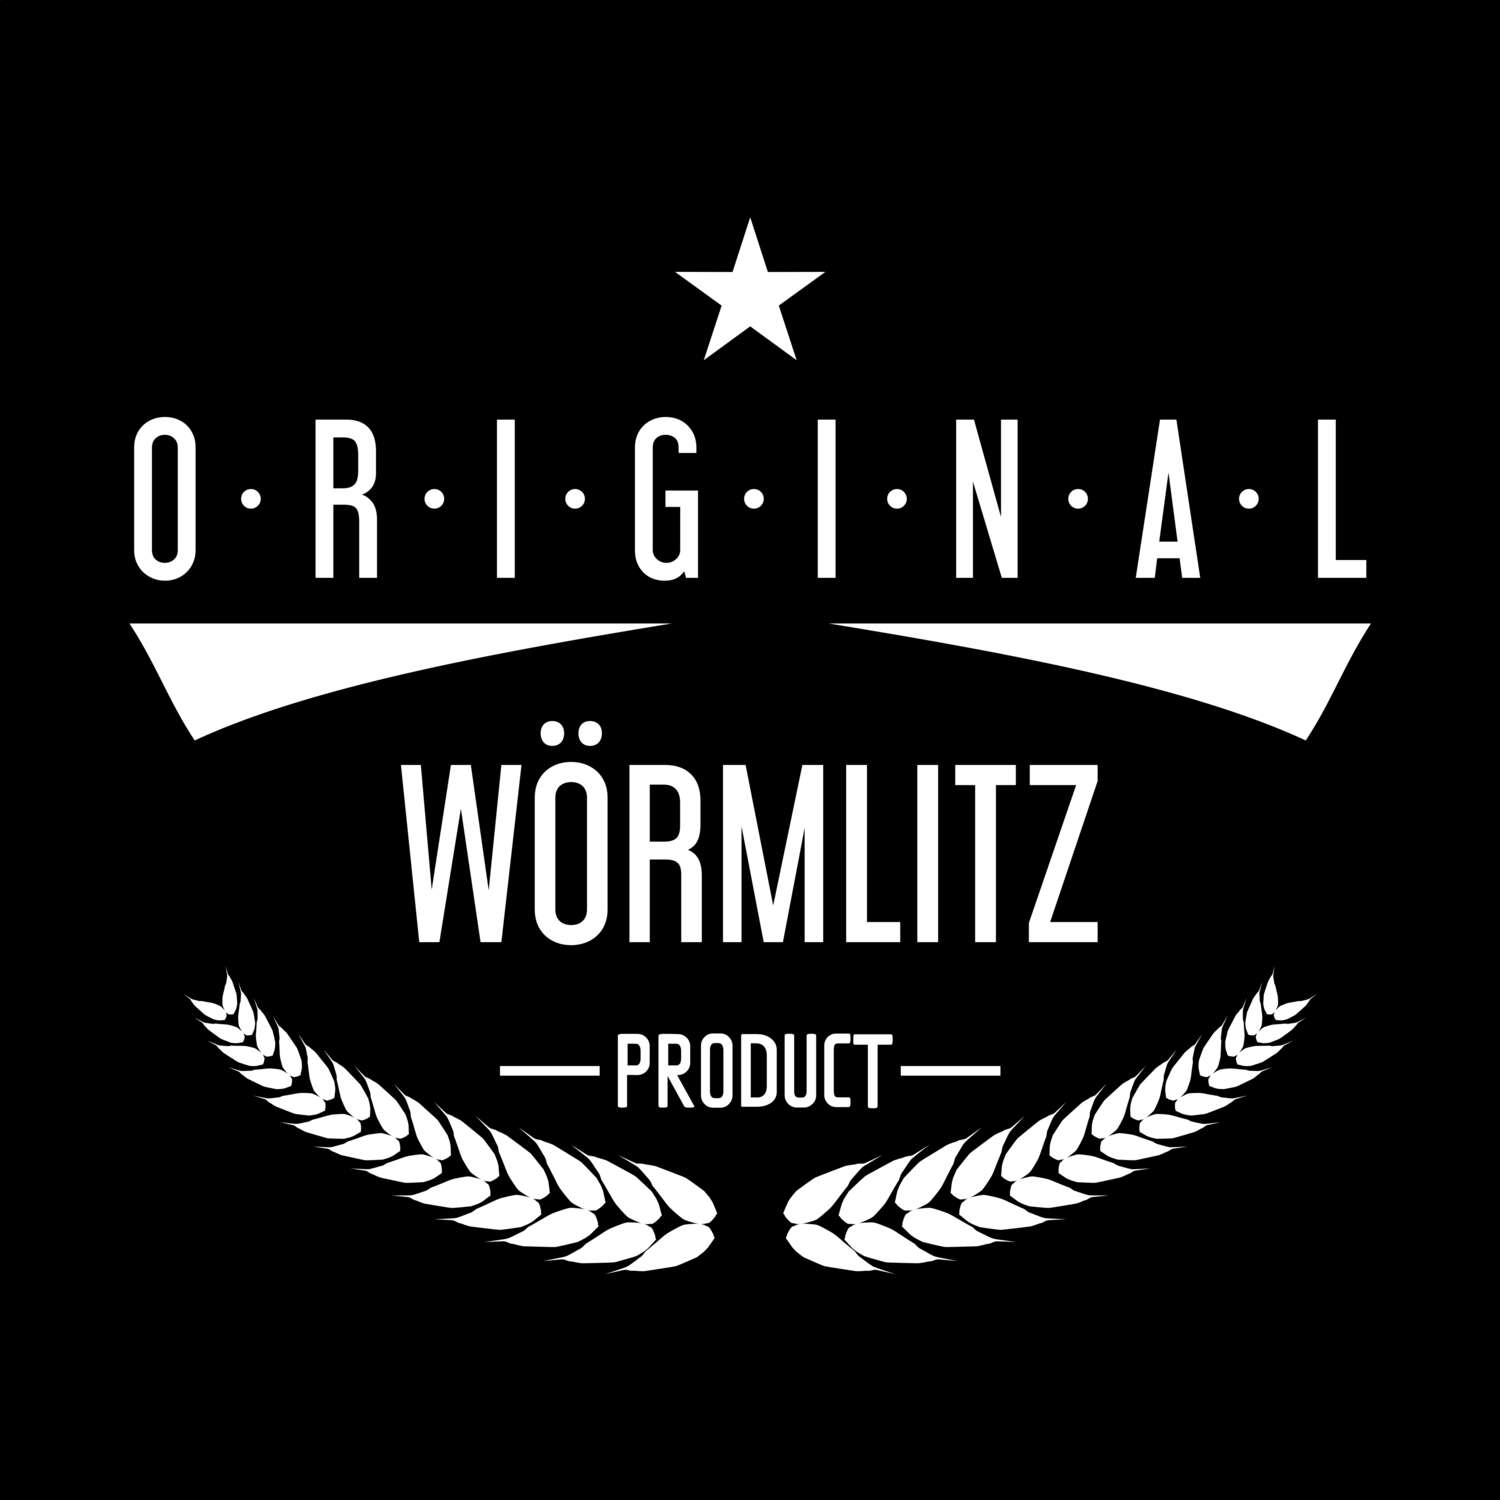 Wörmlitz T-Shirt »Original Product«